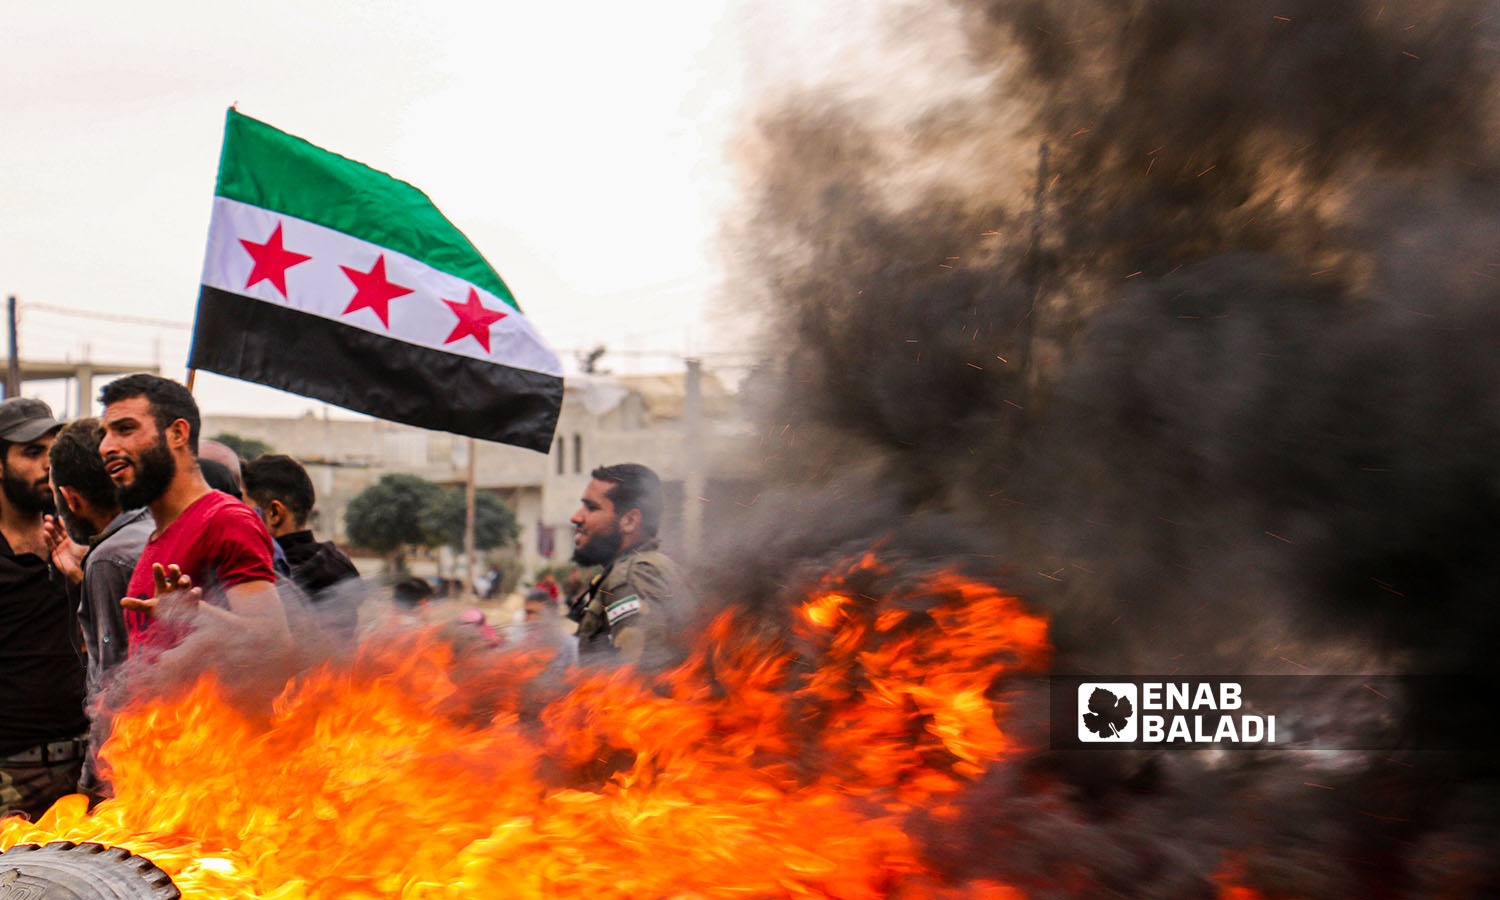 اعتصامات في مدينة اعزاز تنديدًا بمحاولة دخول "هيئة تحرير الشام" إليها 16 من تشرين الأول (عنب بلدي/ ديان جنباز)